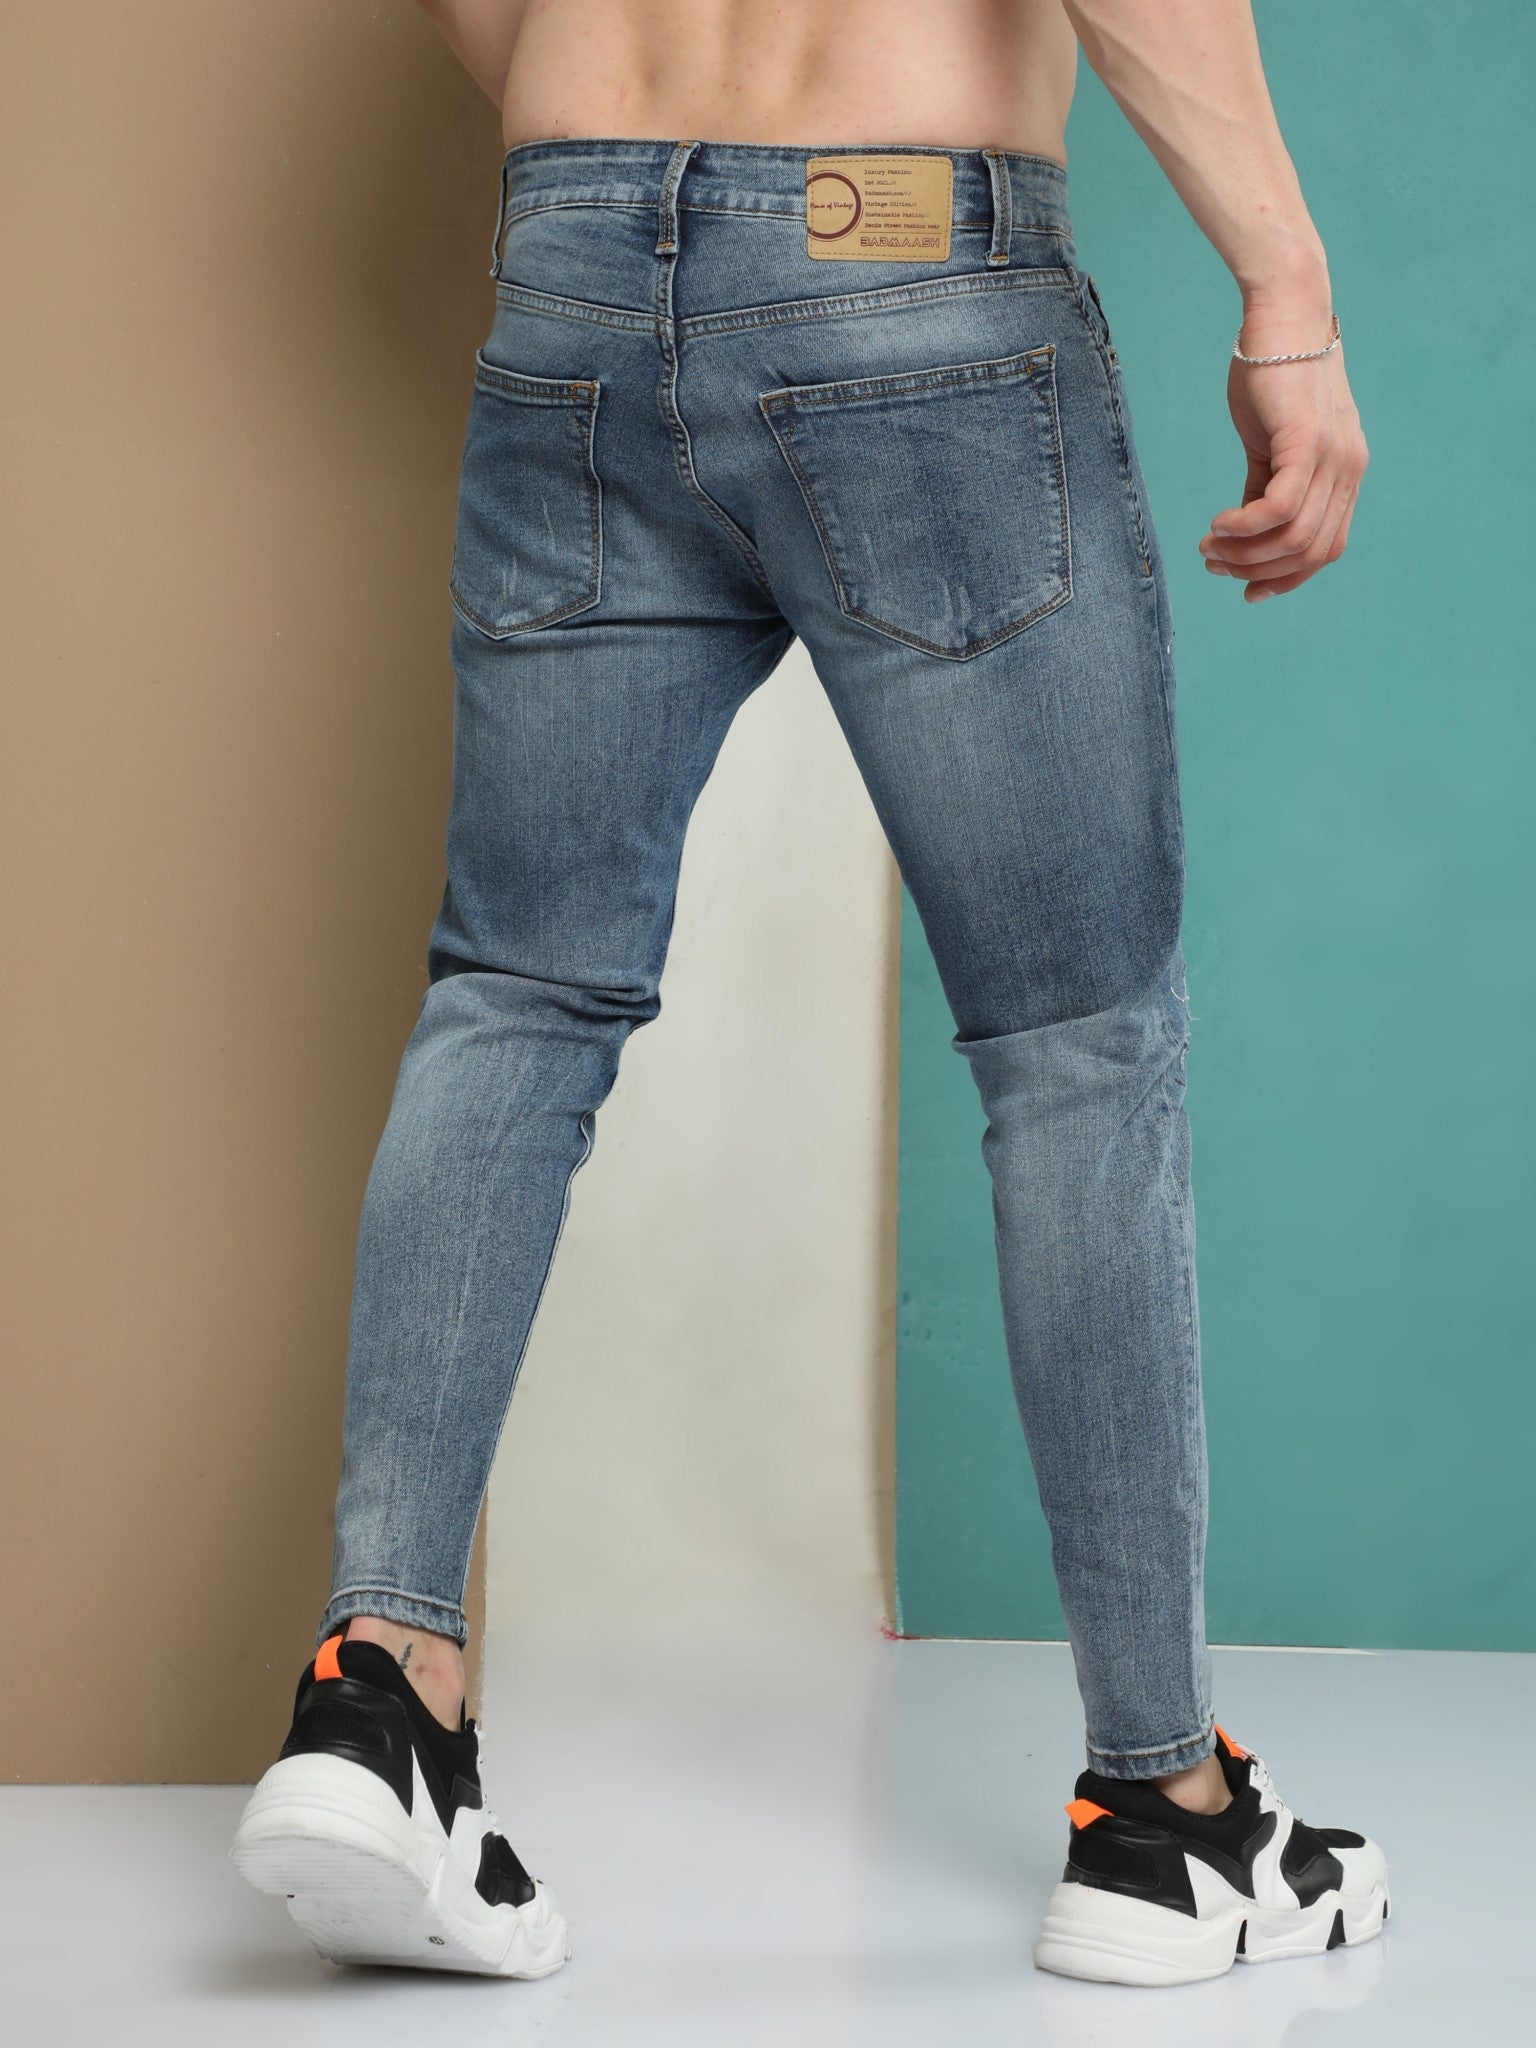 Yinmn Blue Skinny Jeans for Men